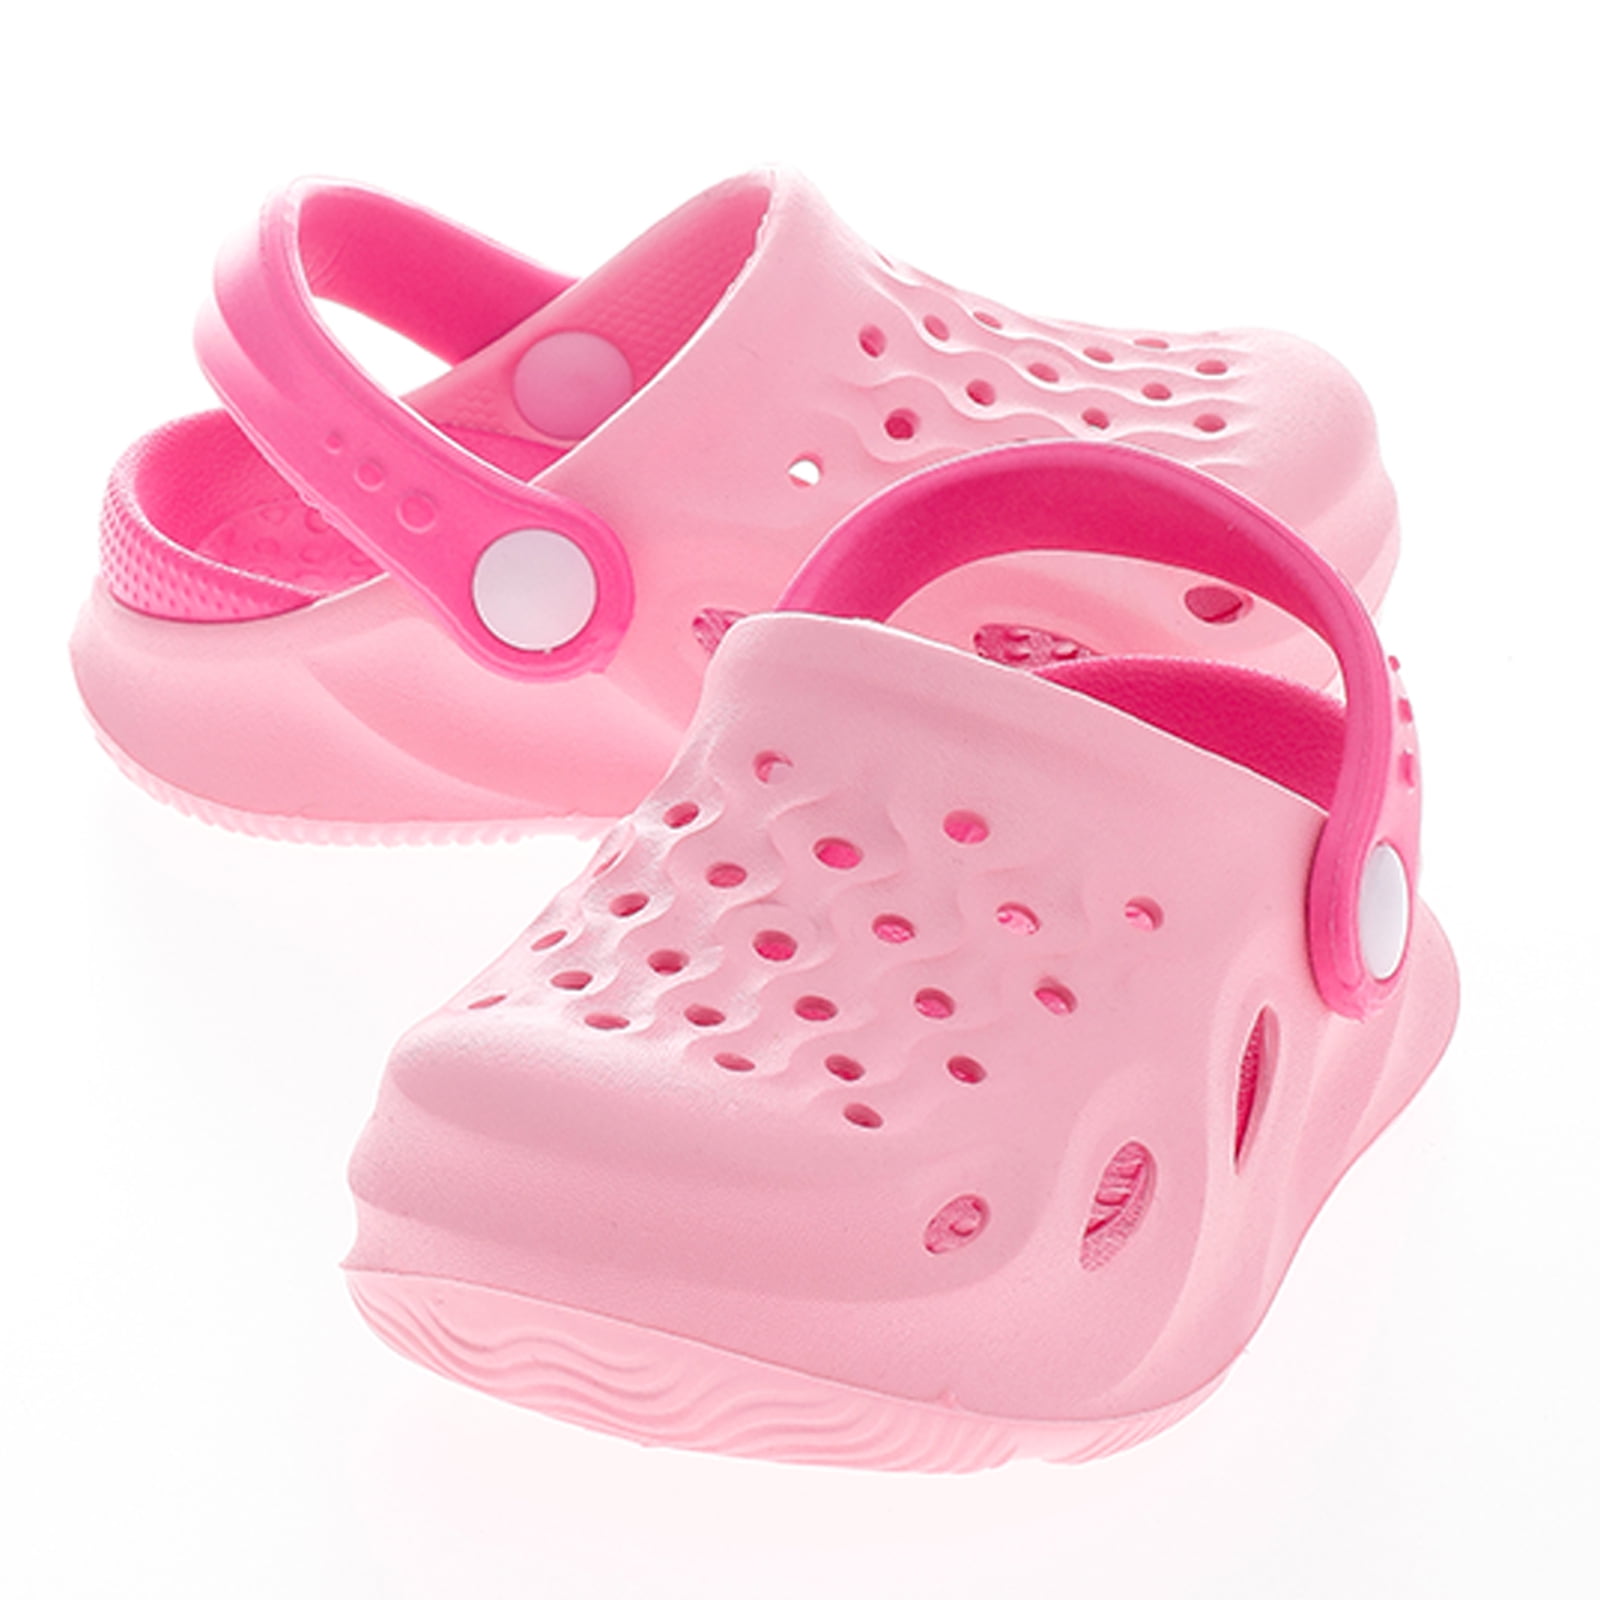 JOINFREE Toddler Clogs Slippers Sandals Non-Slip Girls Boys Clogs Lightweight Garden Shoes for Little Kids Slip-on Beach Pool Shower Slippers